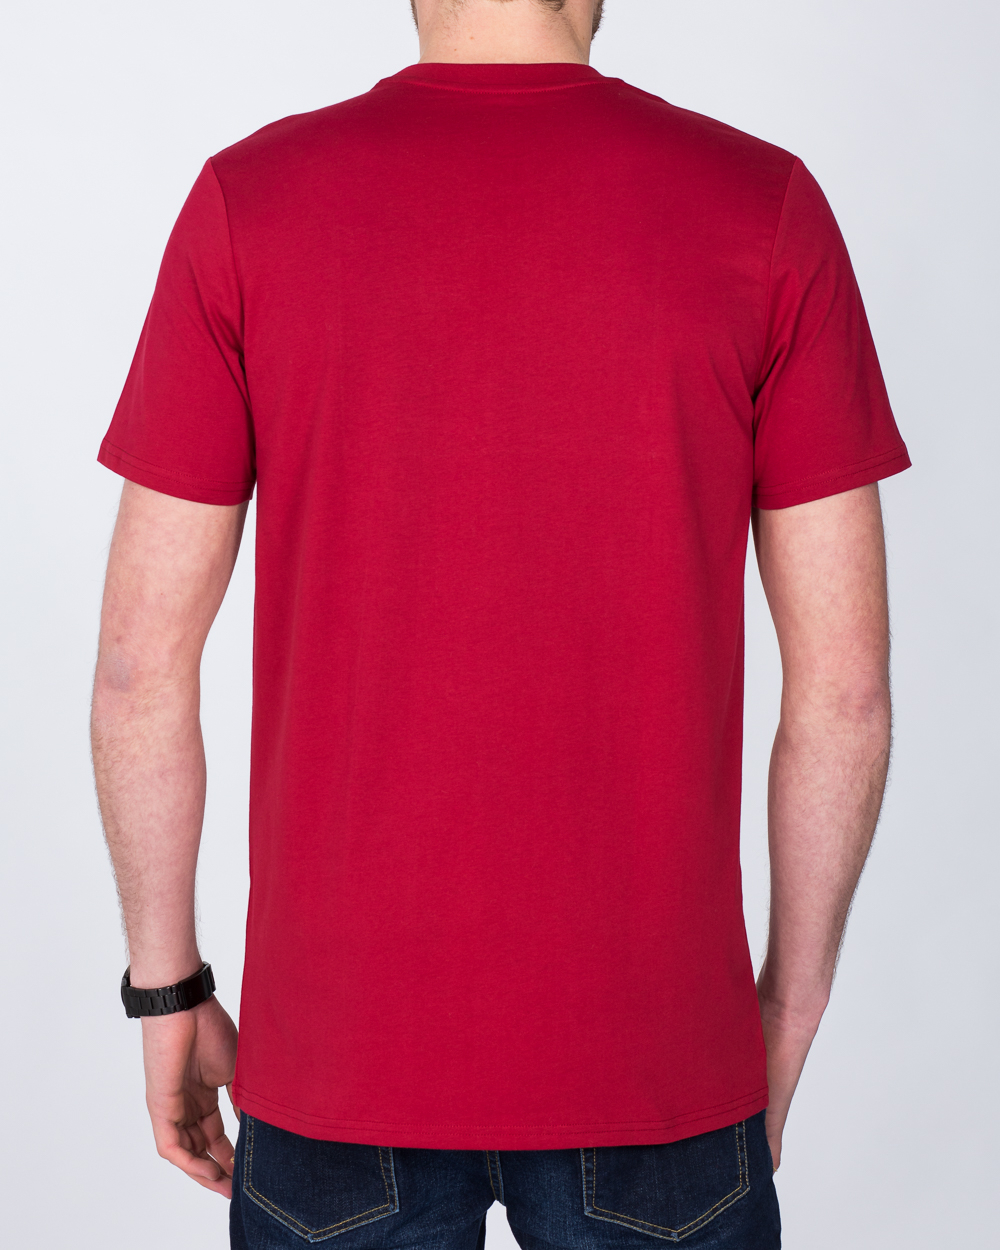 Girav Sydney Extra Tall T-Shirt (red) | 2tall.com